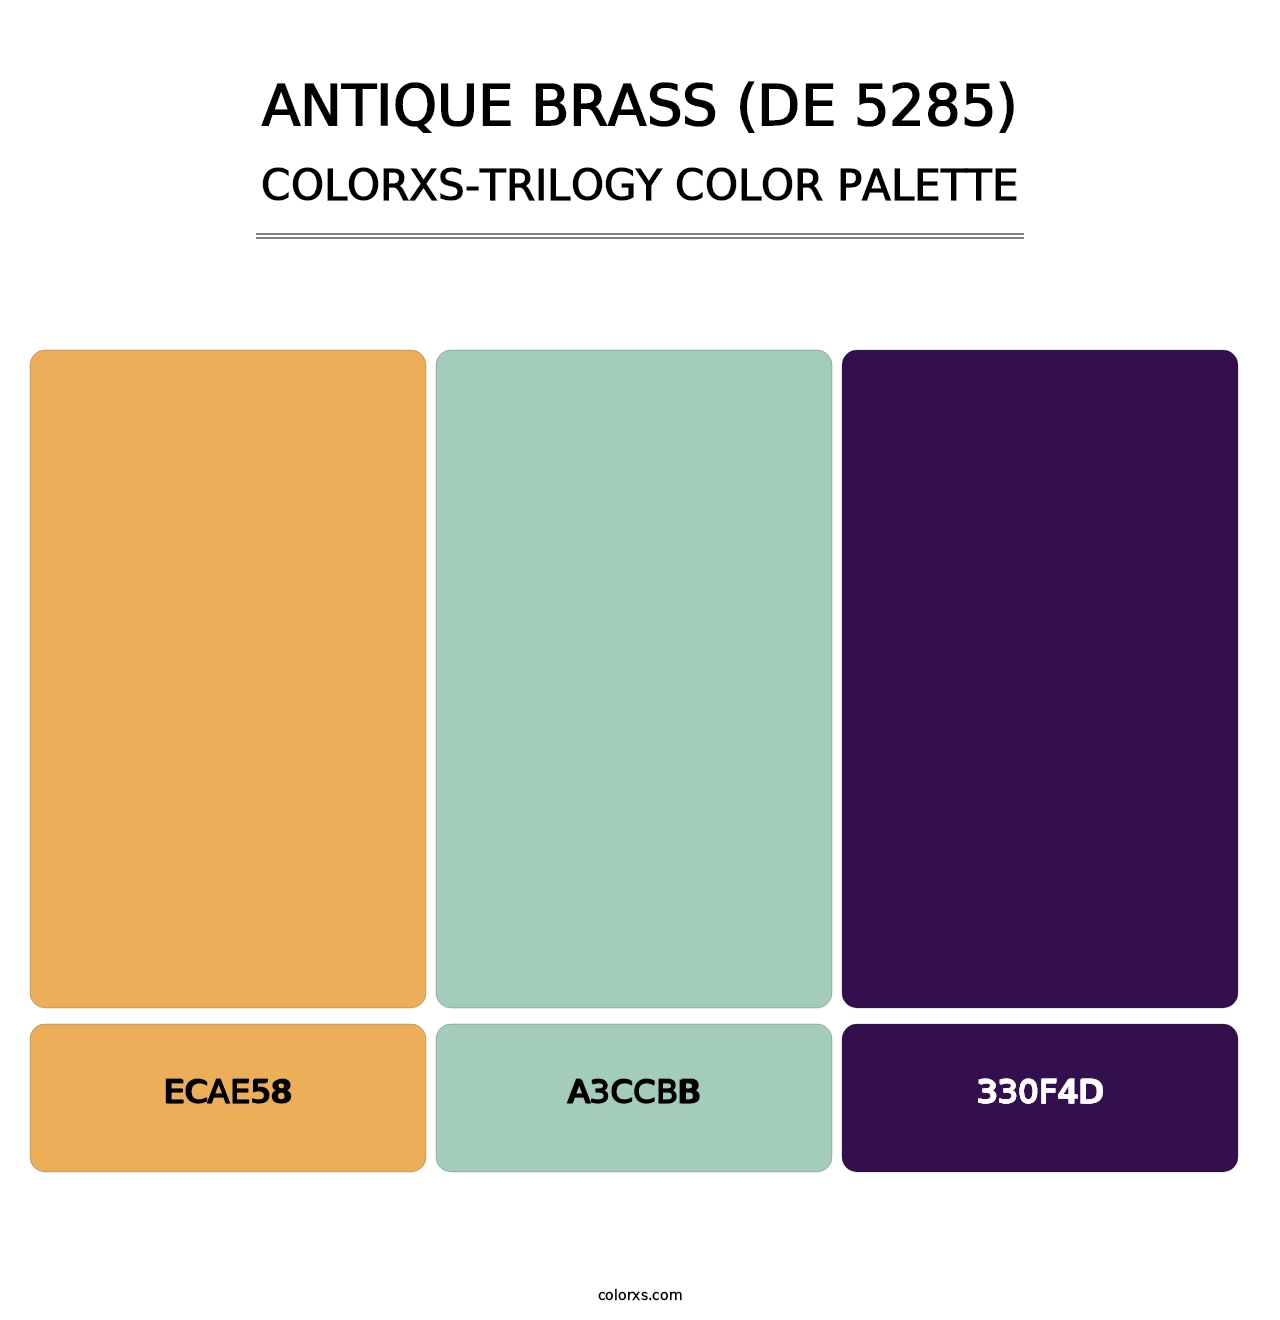 Antique Brass (DE 5285) - Colorxs Trilogy Palette